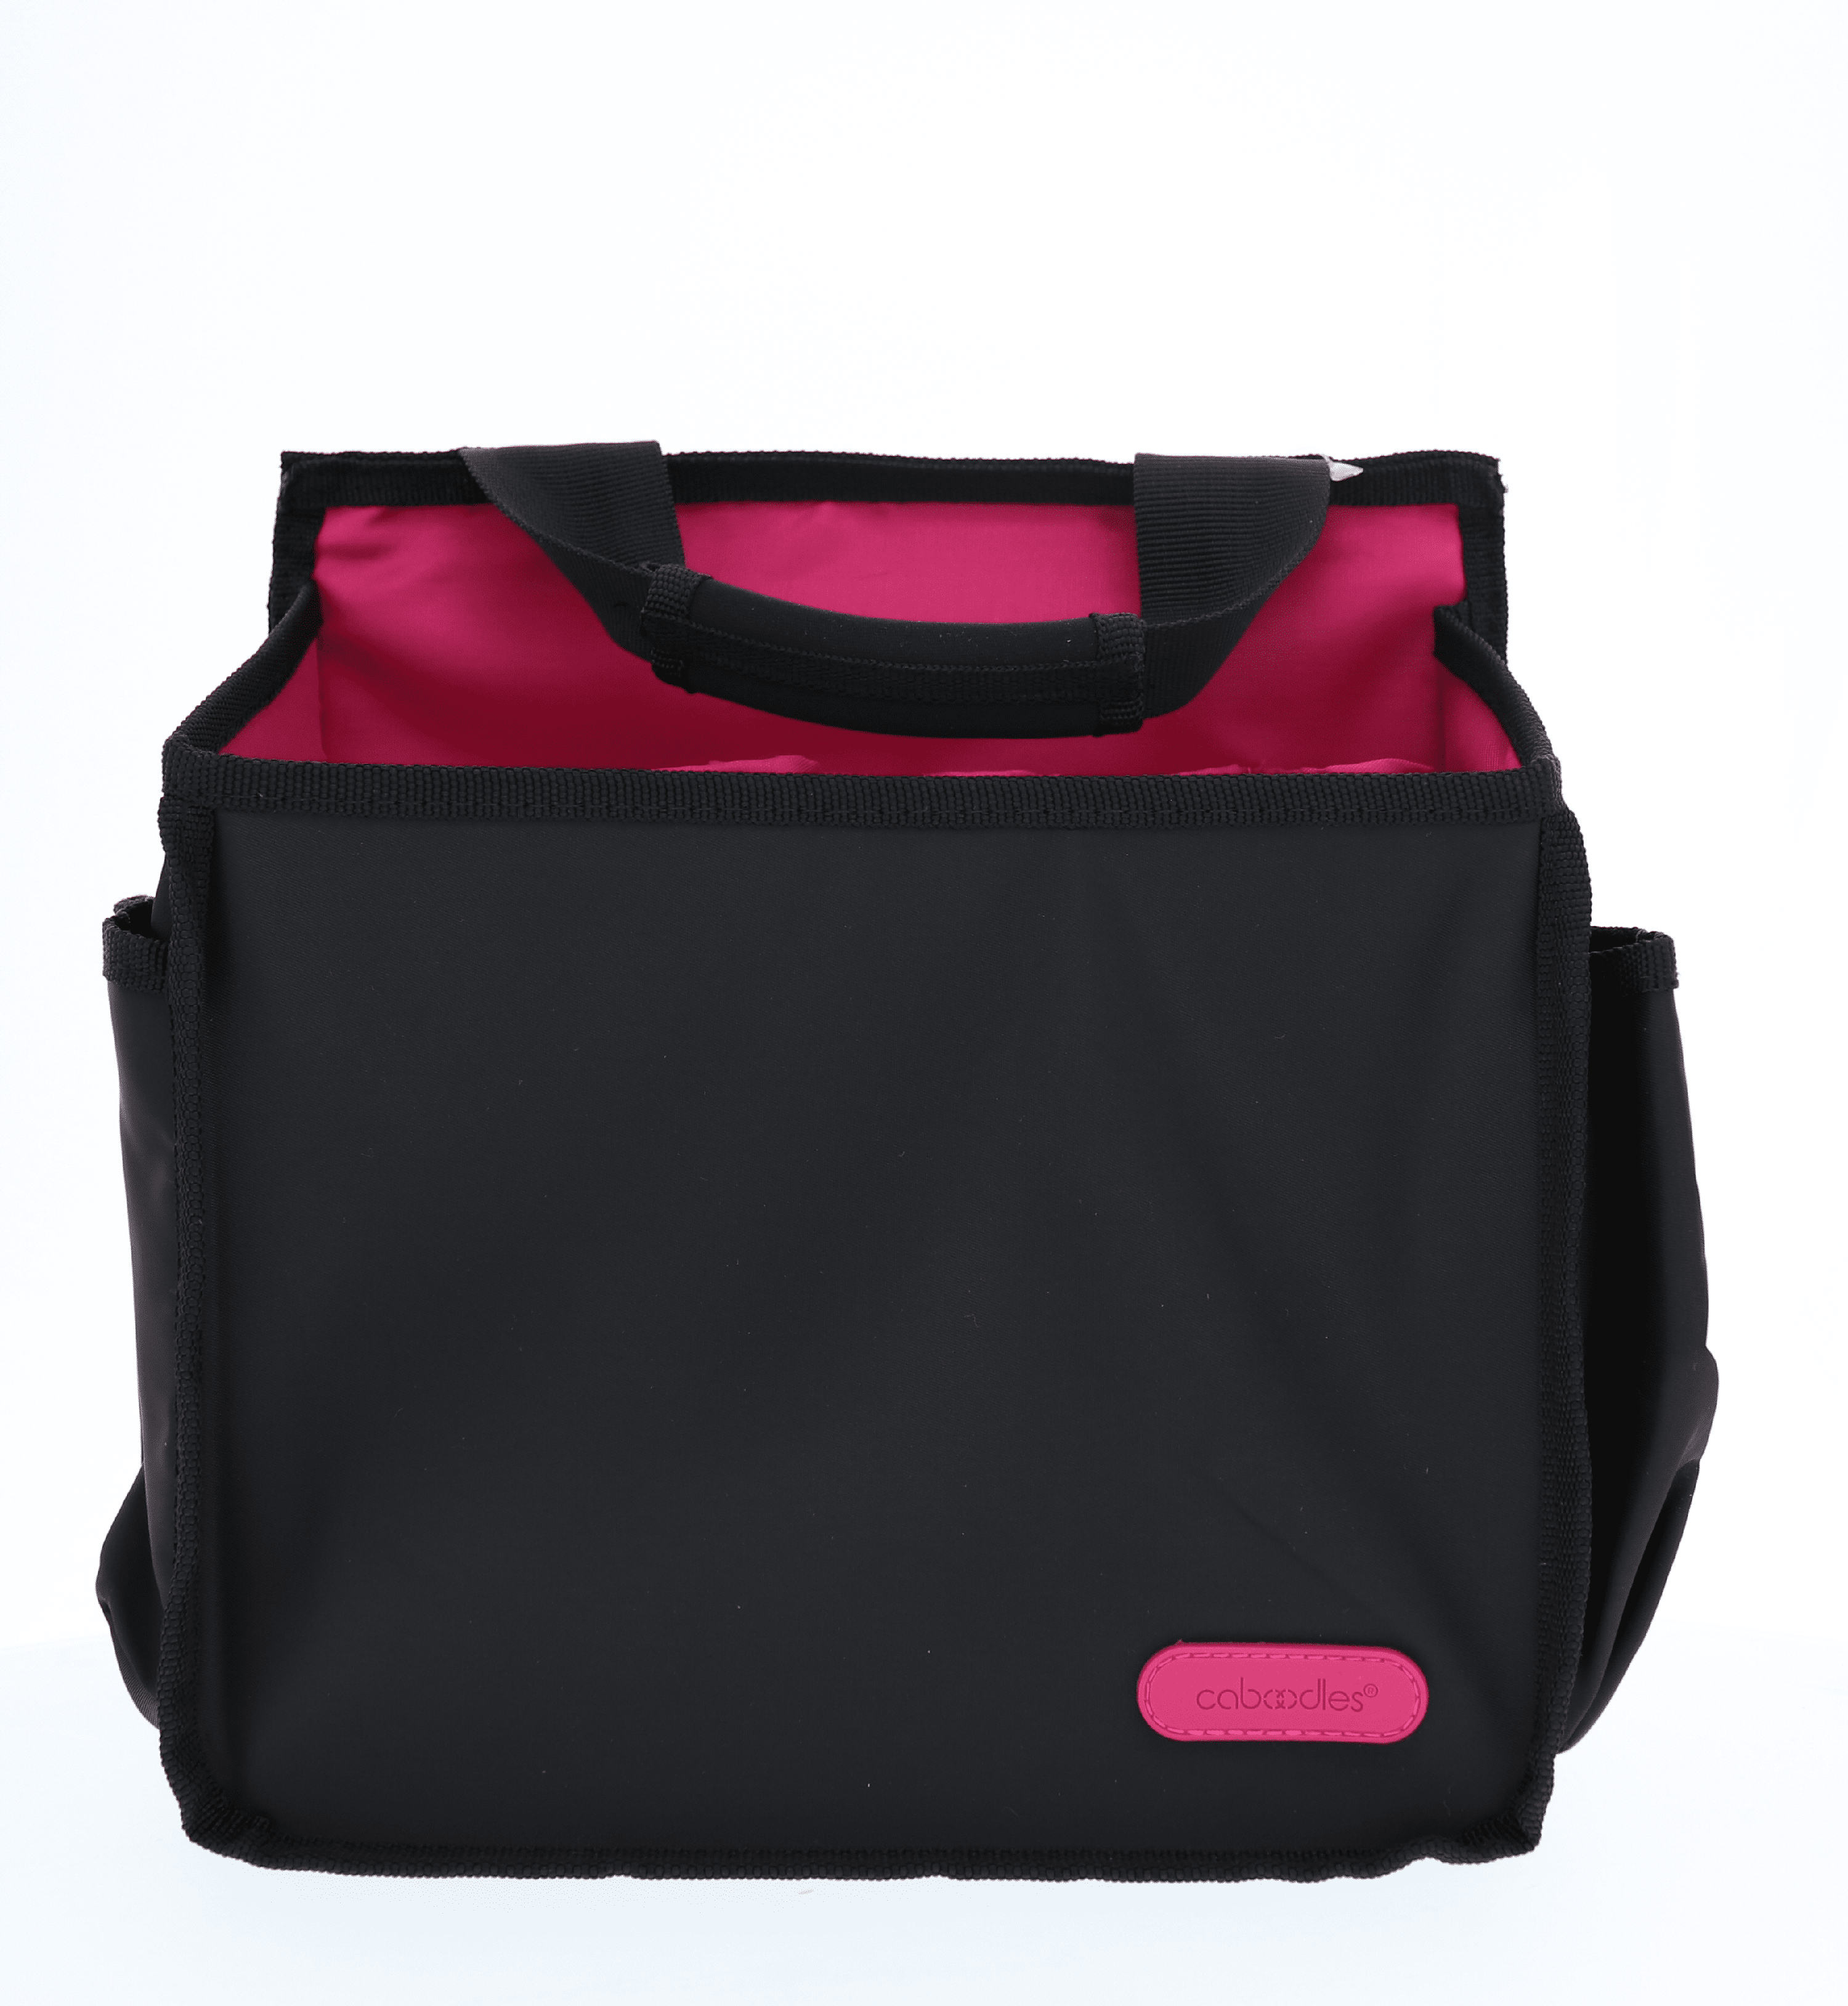 Japan black cat handbag cord storage bag makeup bags Phone bag 